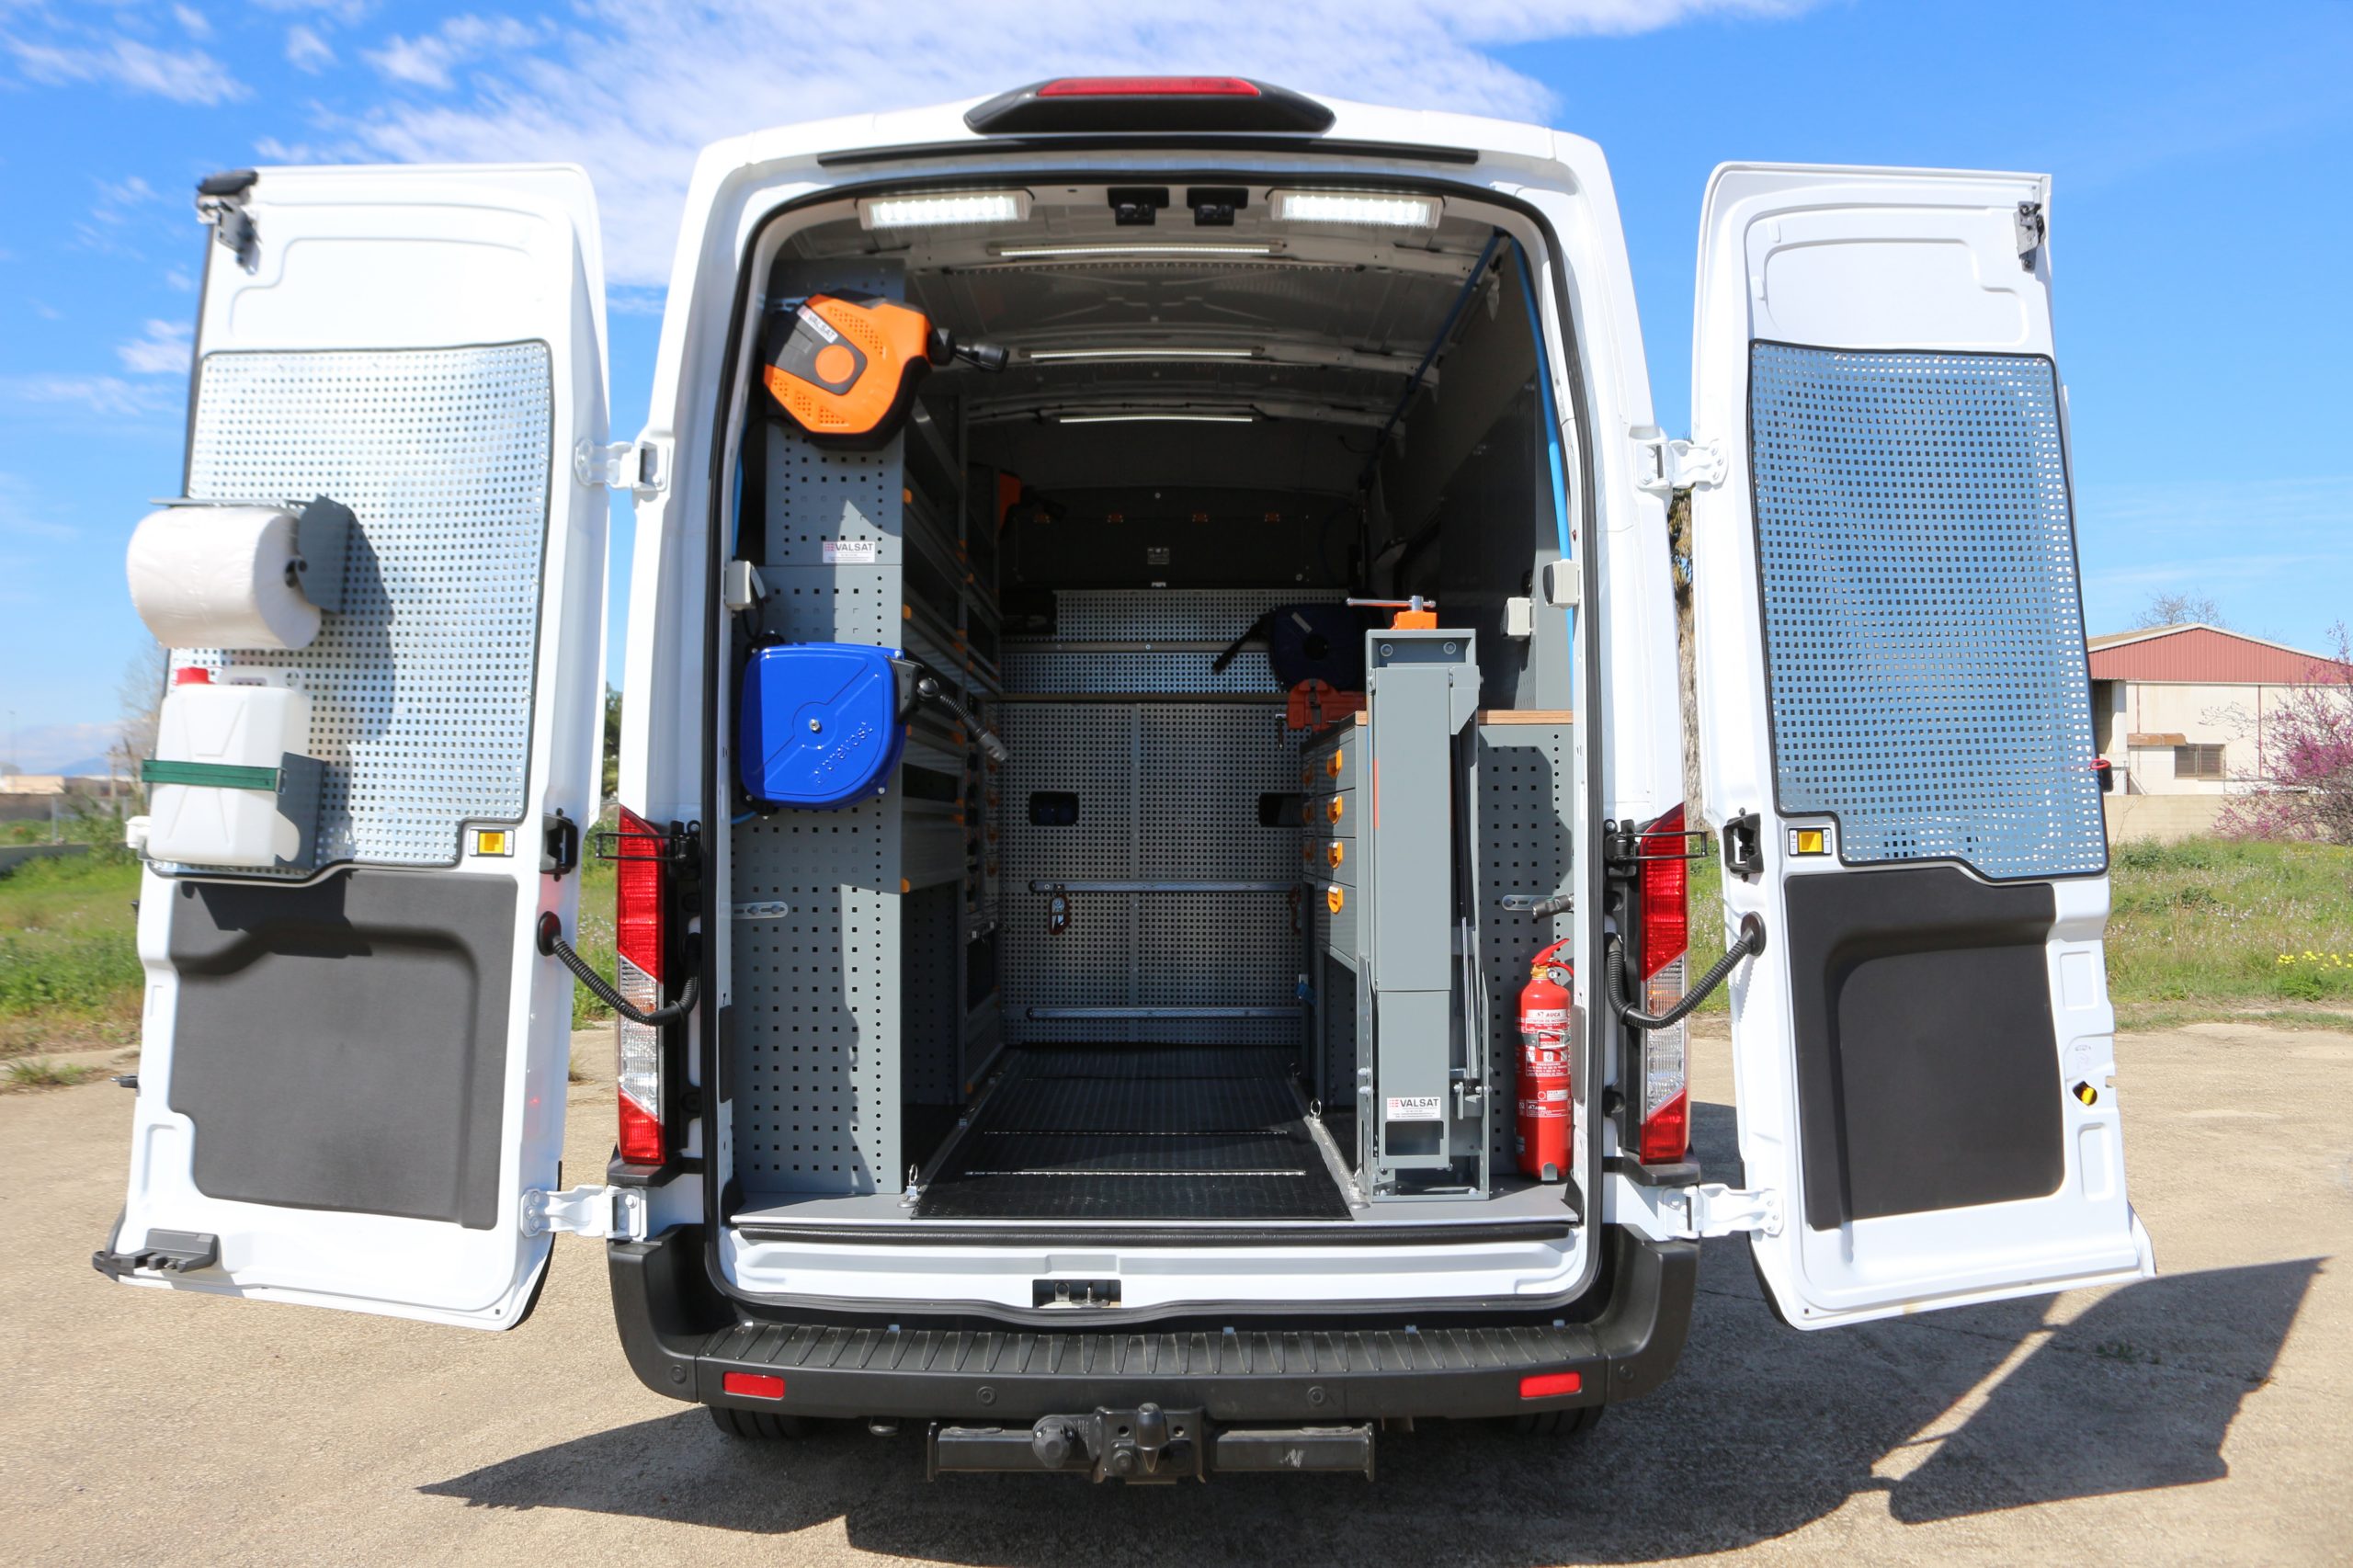 Accesorios para furgoneta camper vs furgoneta taller móvil